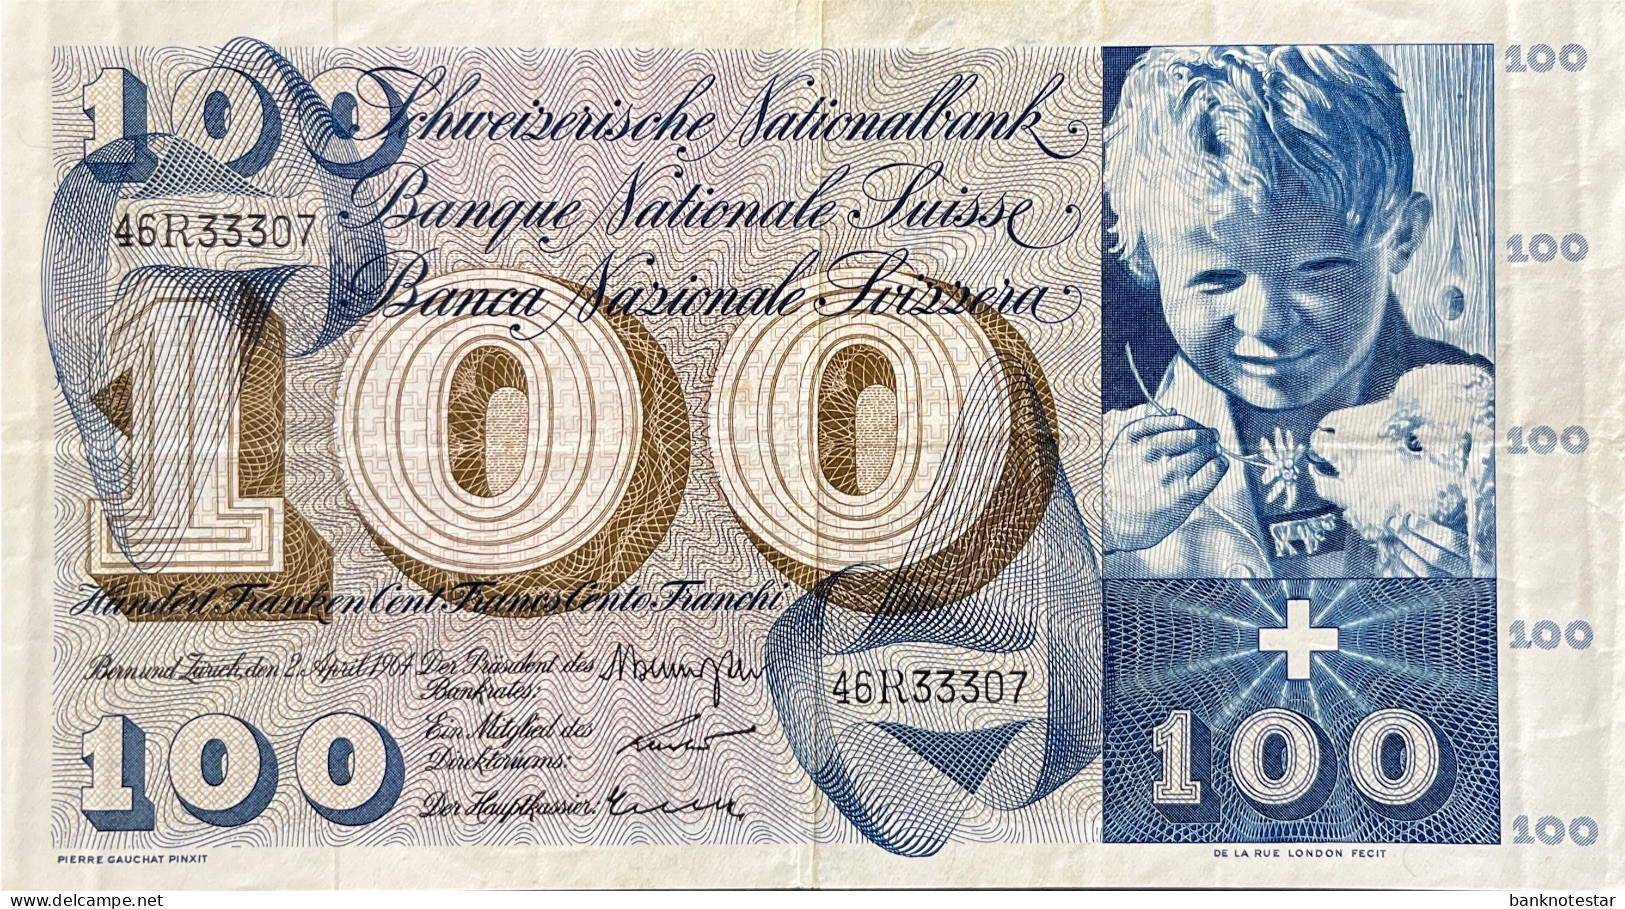 Switzerland 100 Franken, P-49f (02.04.1964) - Very Fine - Switzerland